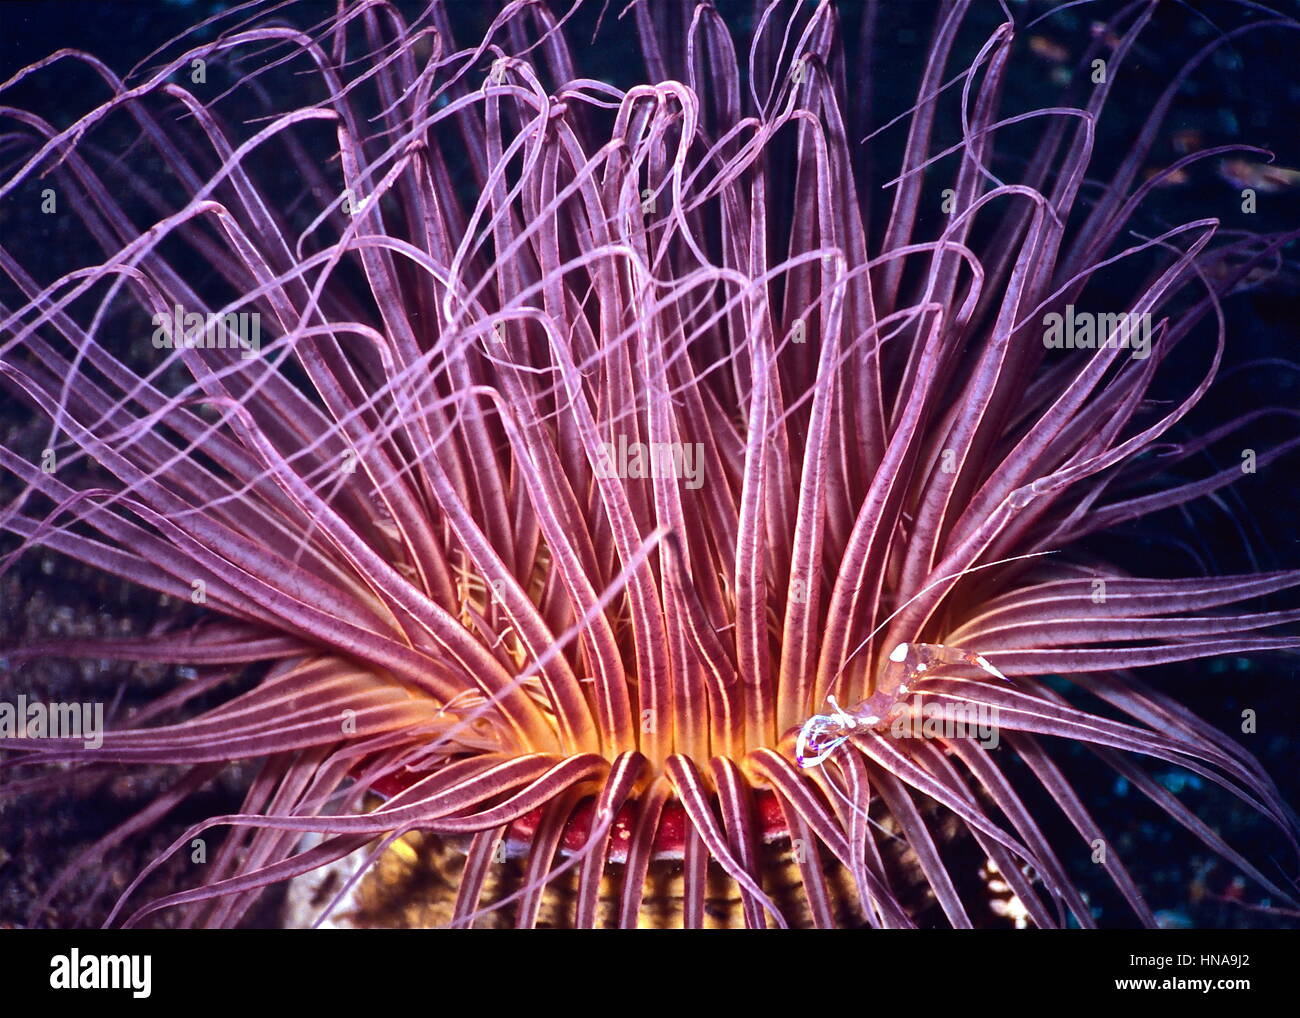 Un tube anemone (Ceriannthus filiformis) nourrir la nuit avec un partenaire (crevettes) holshuist Ancylomenes à sa base. Le nord de Sulawesi, Indonésie. Banque D'Images